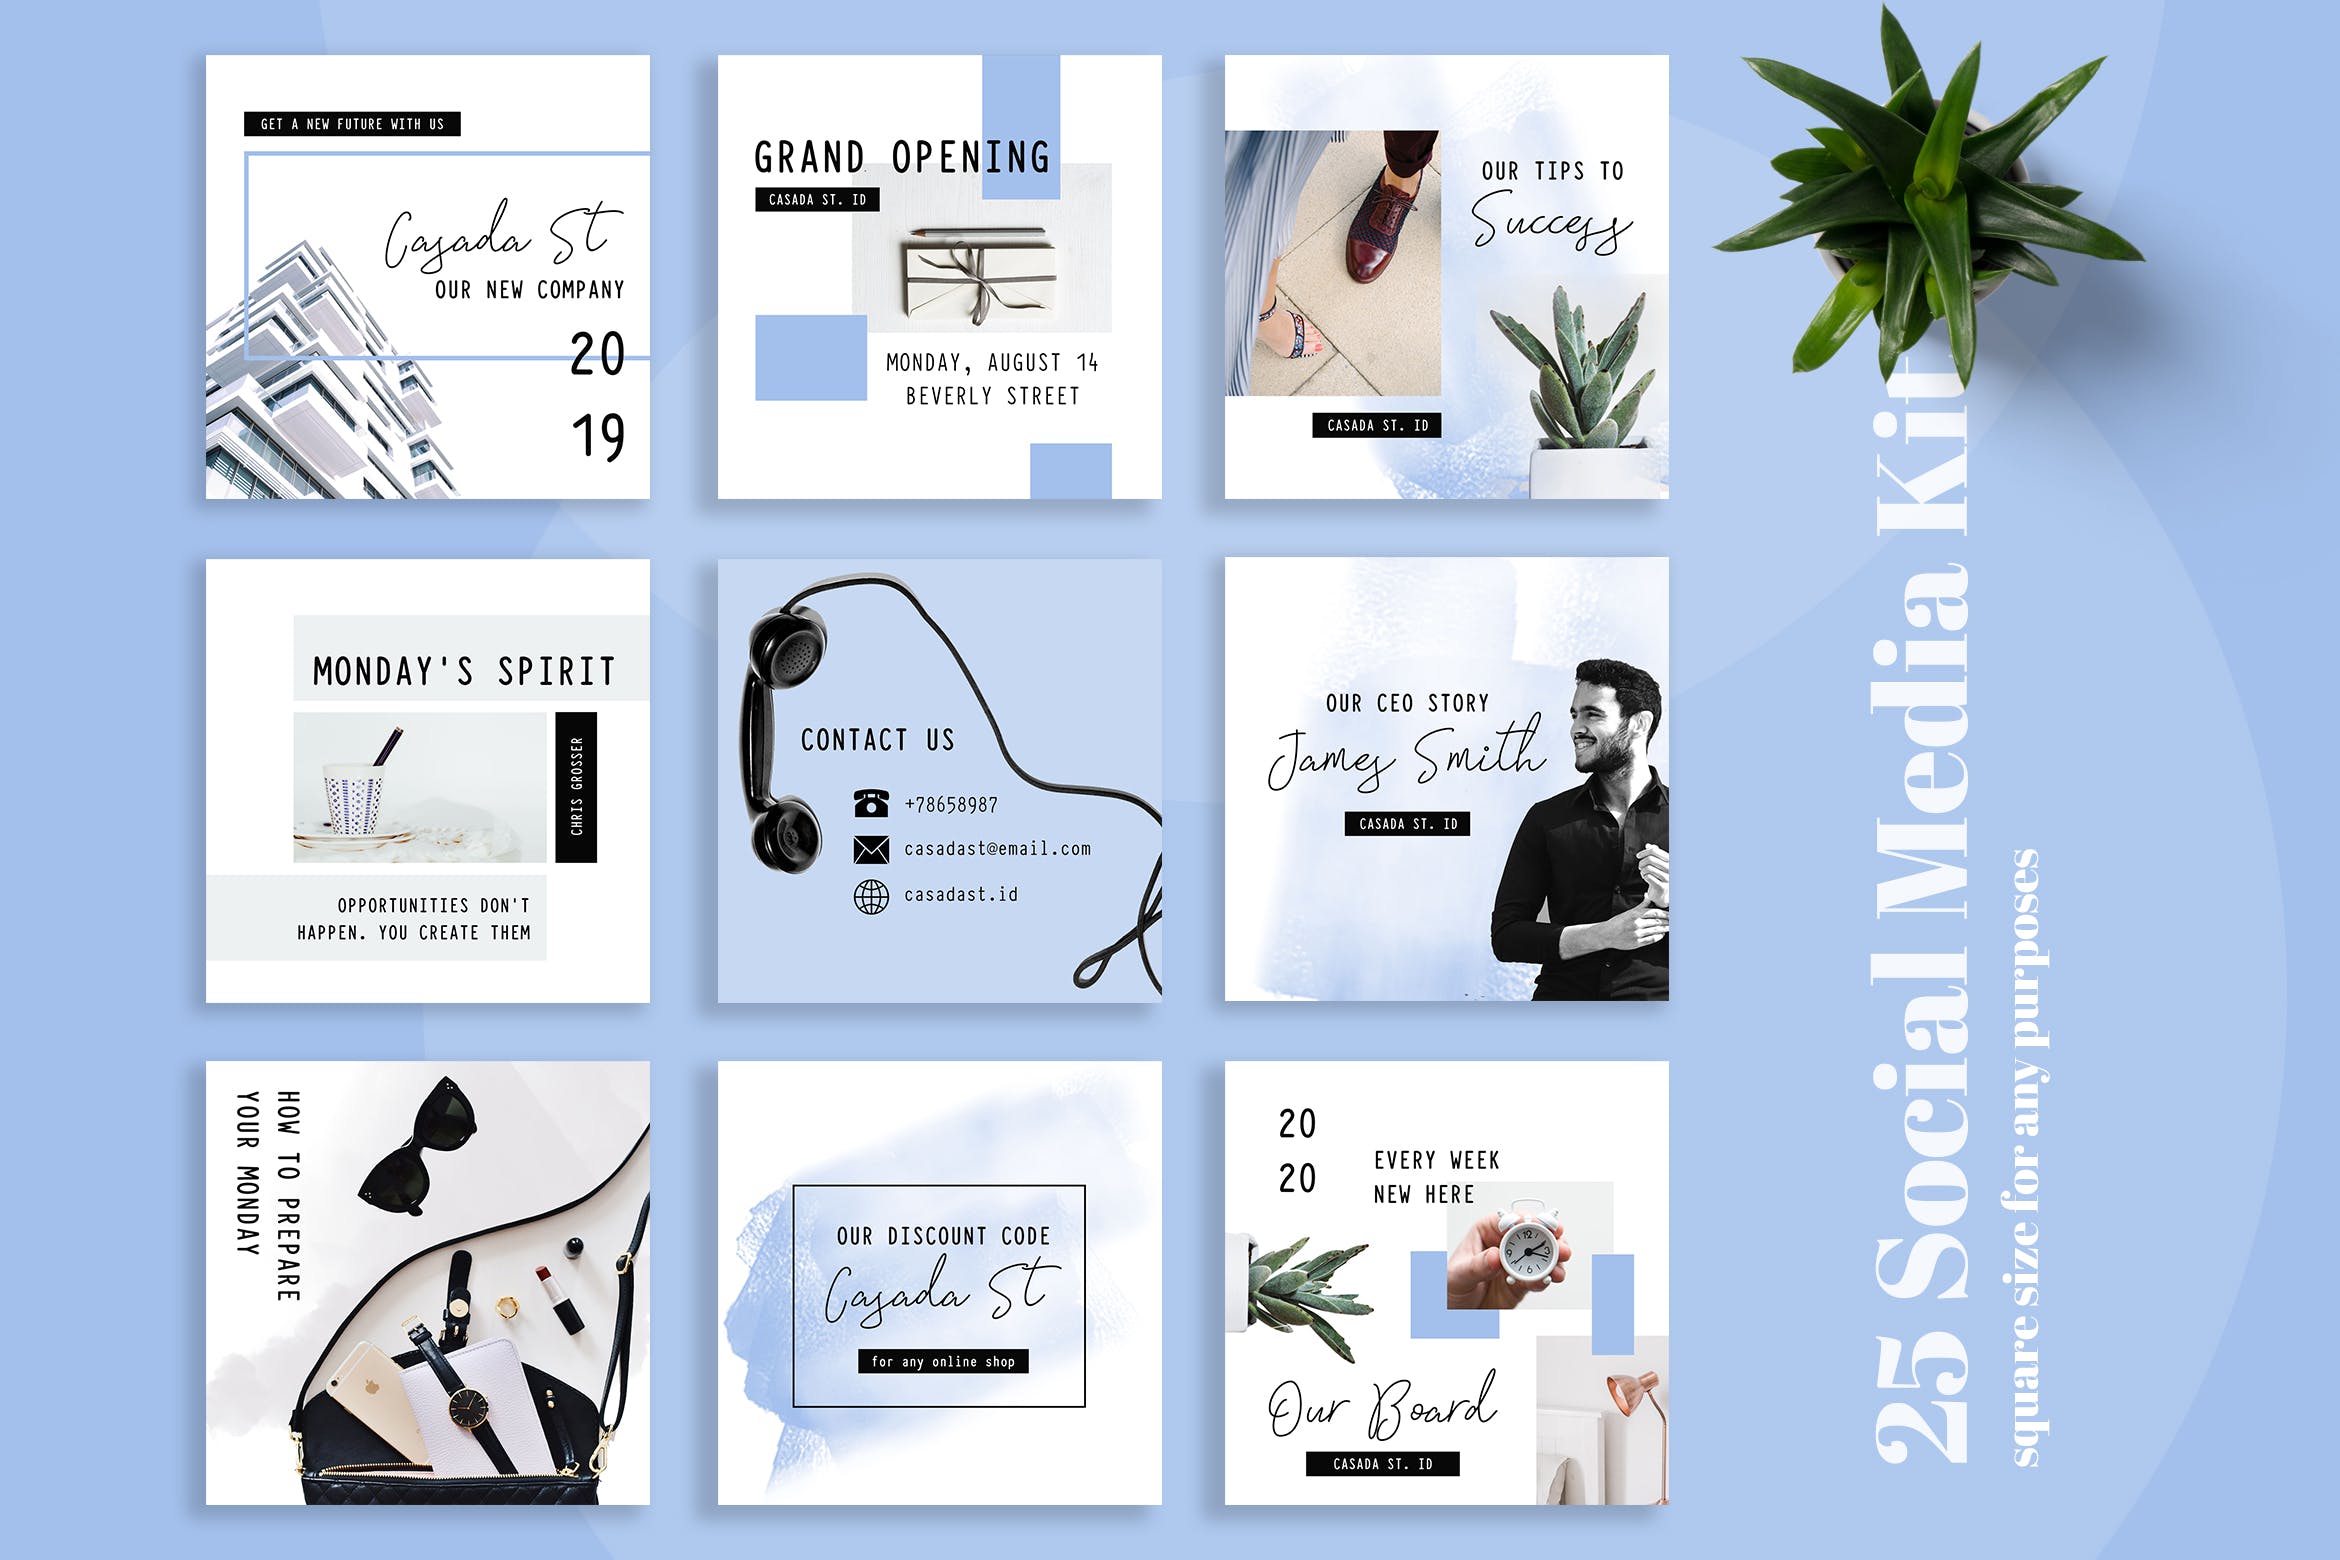 企业品牌营销社交媒体广告设计模板蚂蚁素材精选 Casada Social Media Kit插图